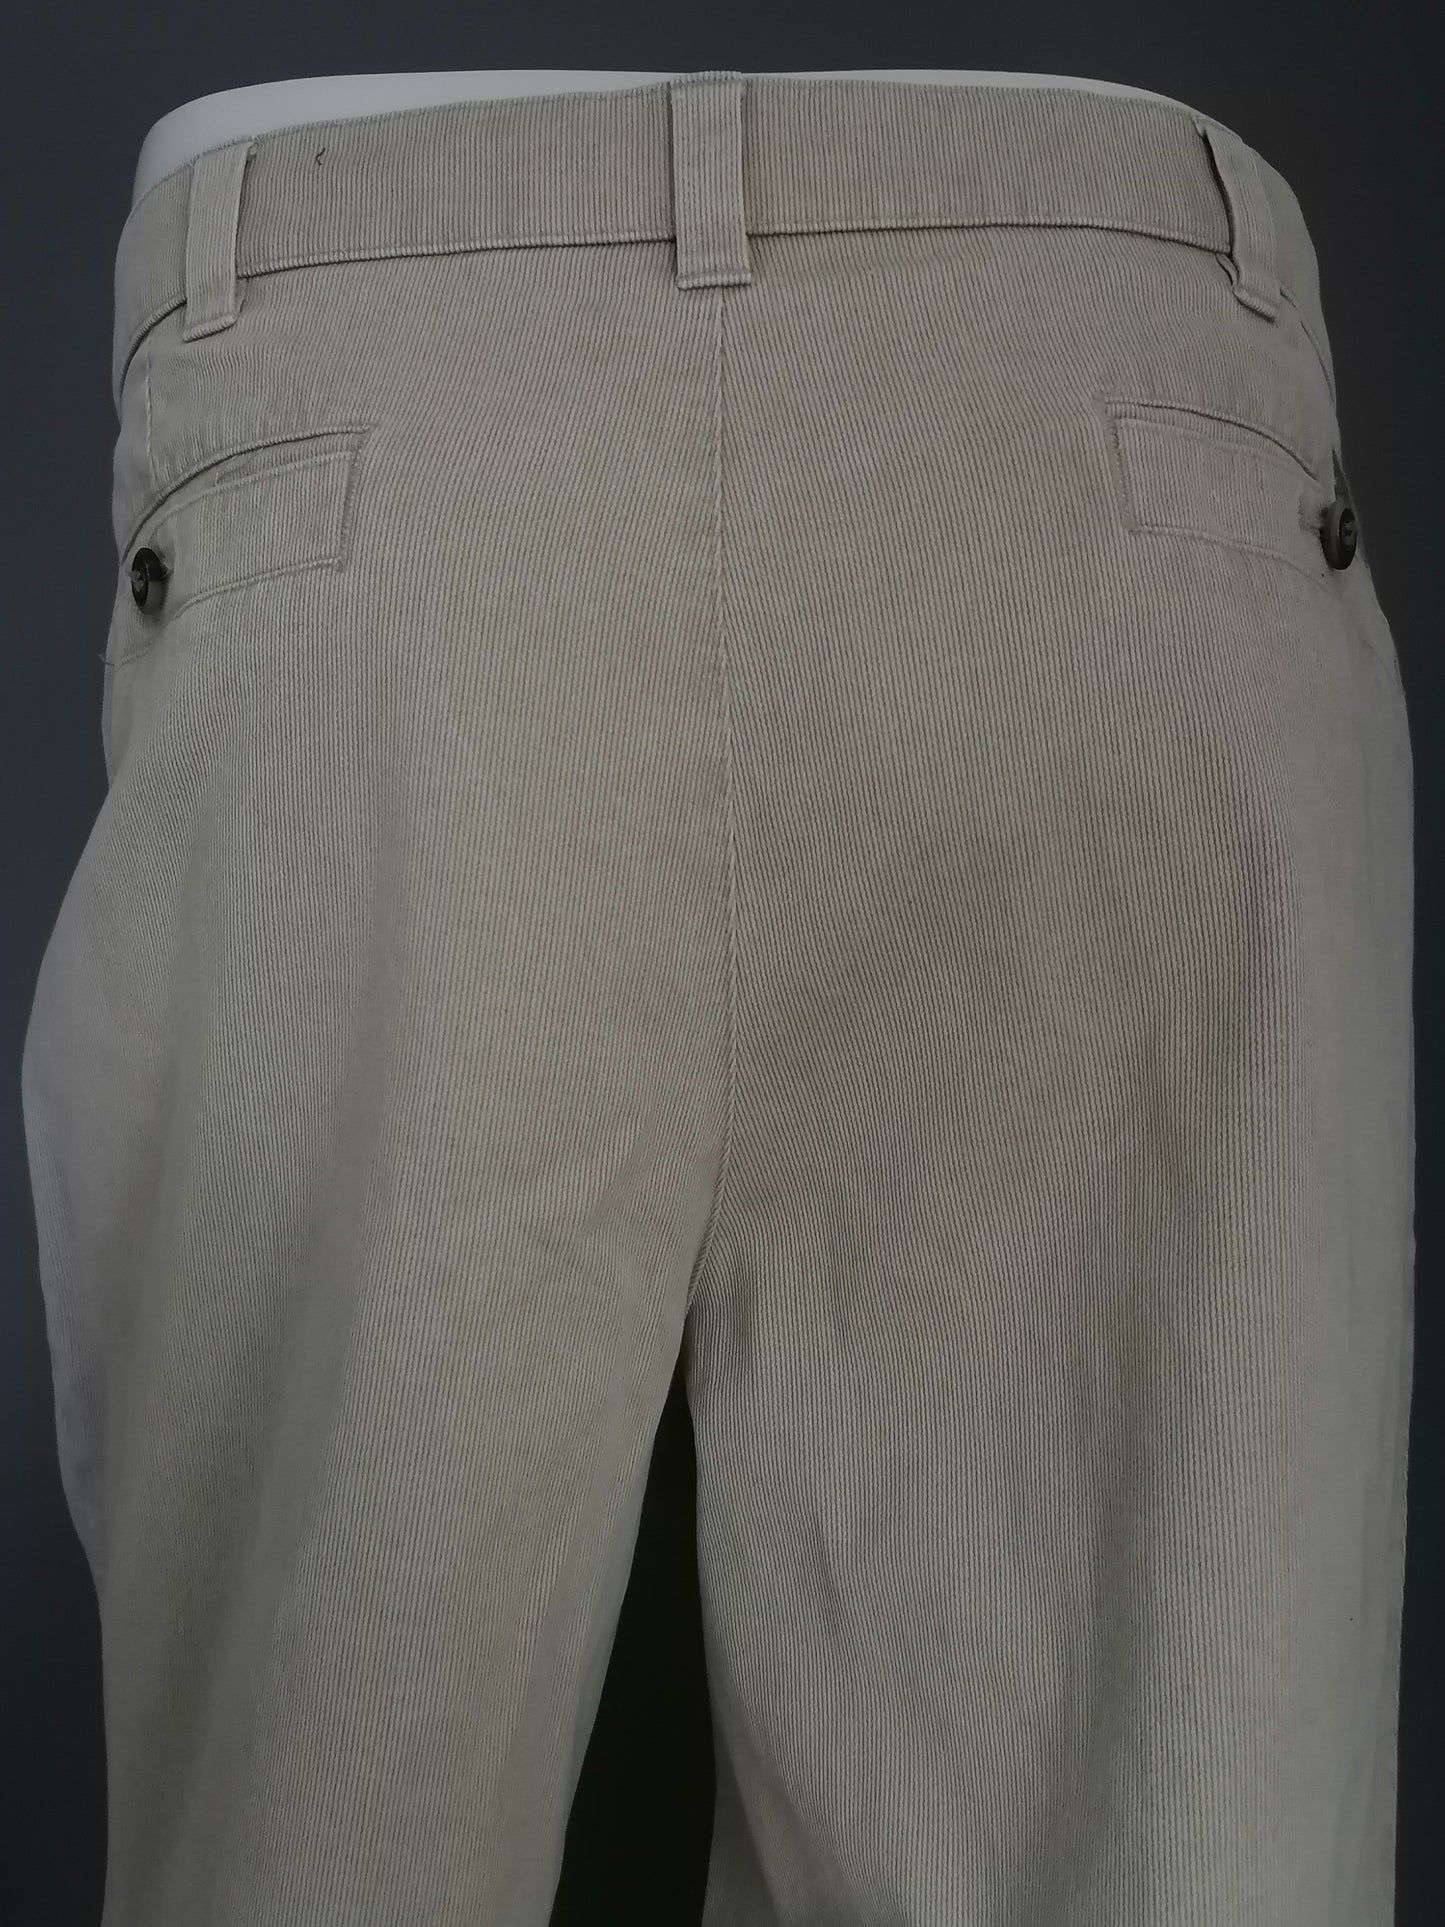 Pantalon extensible confort. Motif rayé beige. Taille 54 / L.